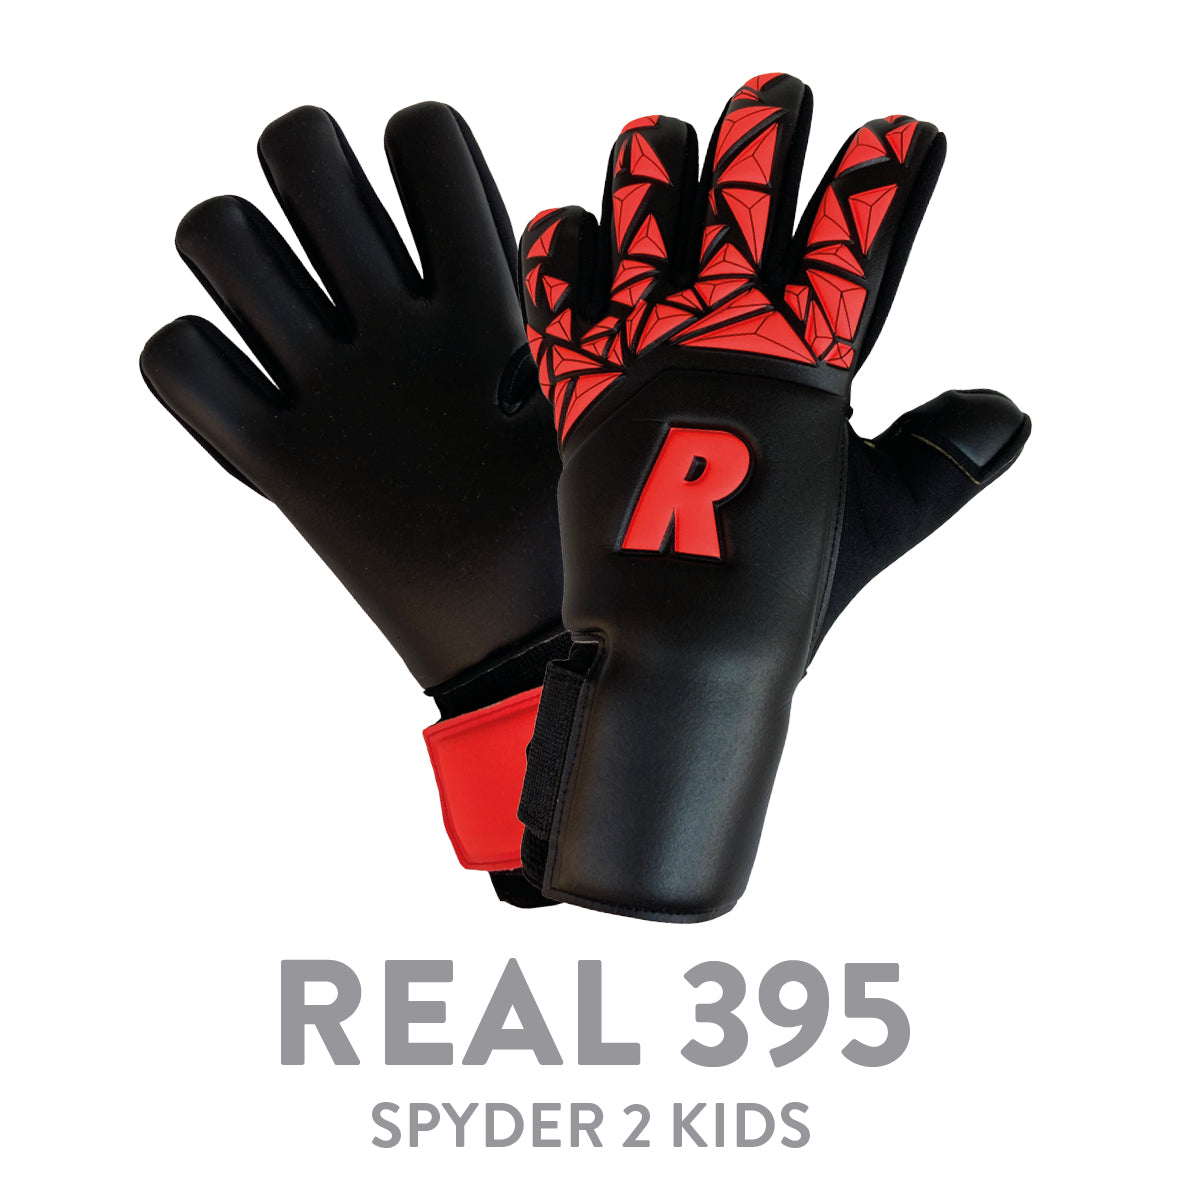 REAL JR 395 SPYDER BLACK/RED